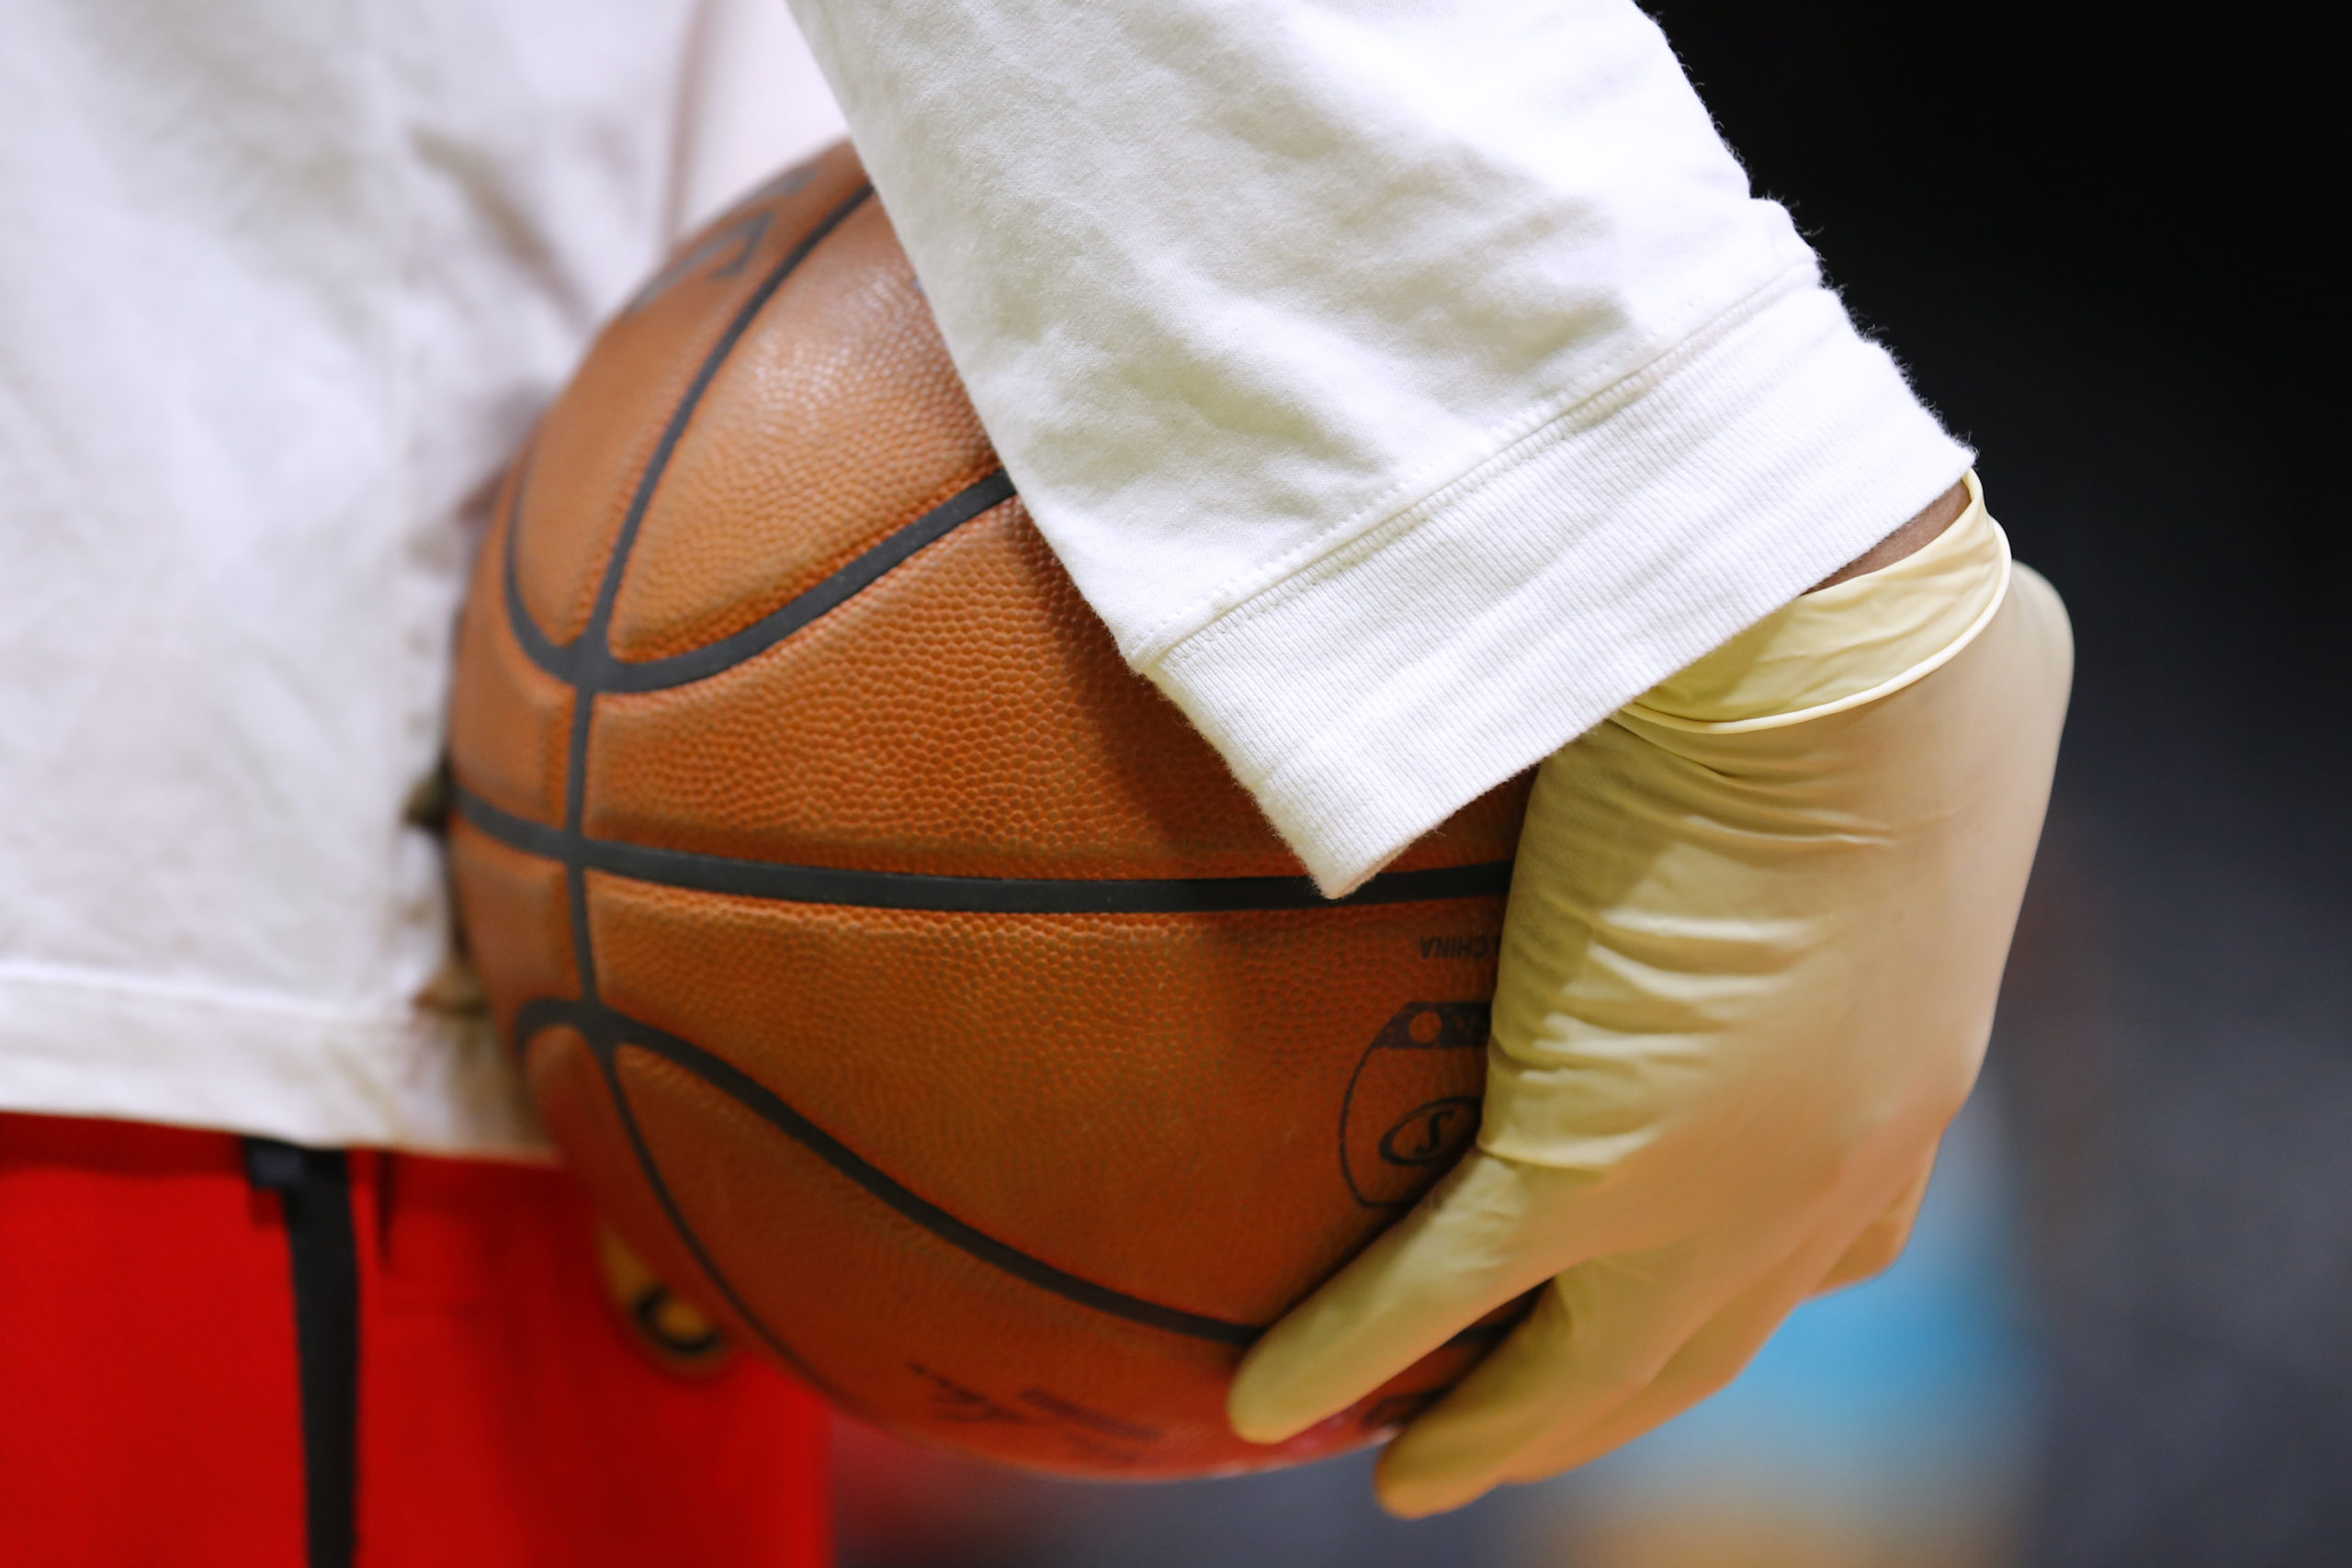 ATLANTA, GA - MARCH 09: Ballboys wear gloves while handling warmup basketballs as a precautionary m...